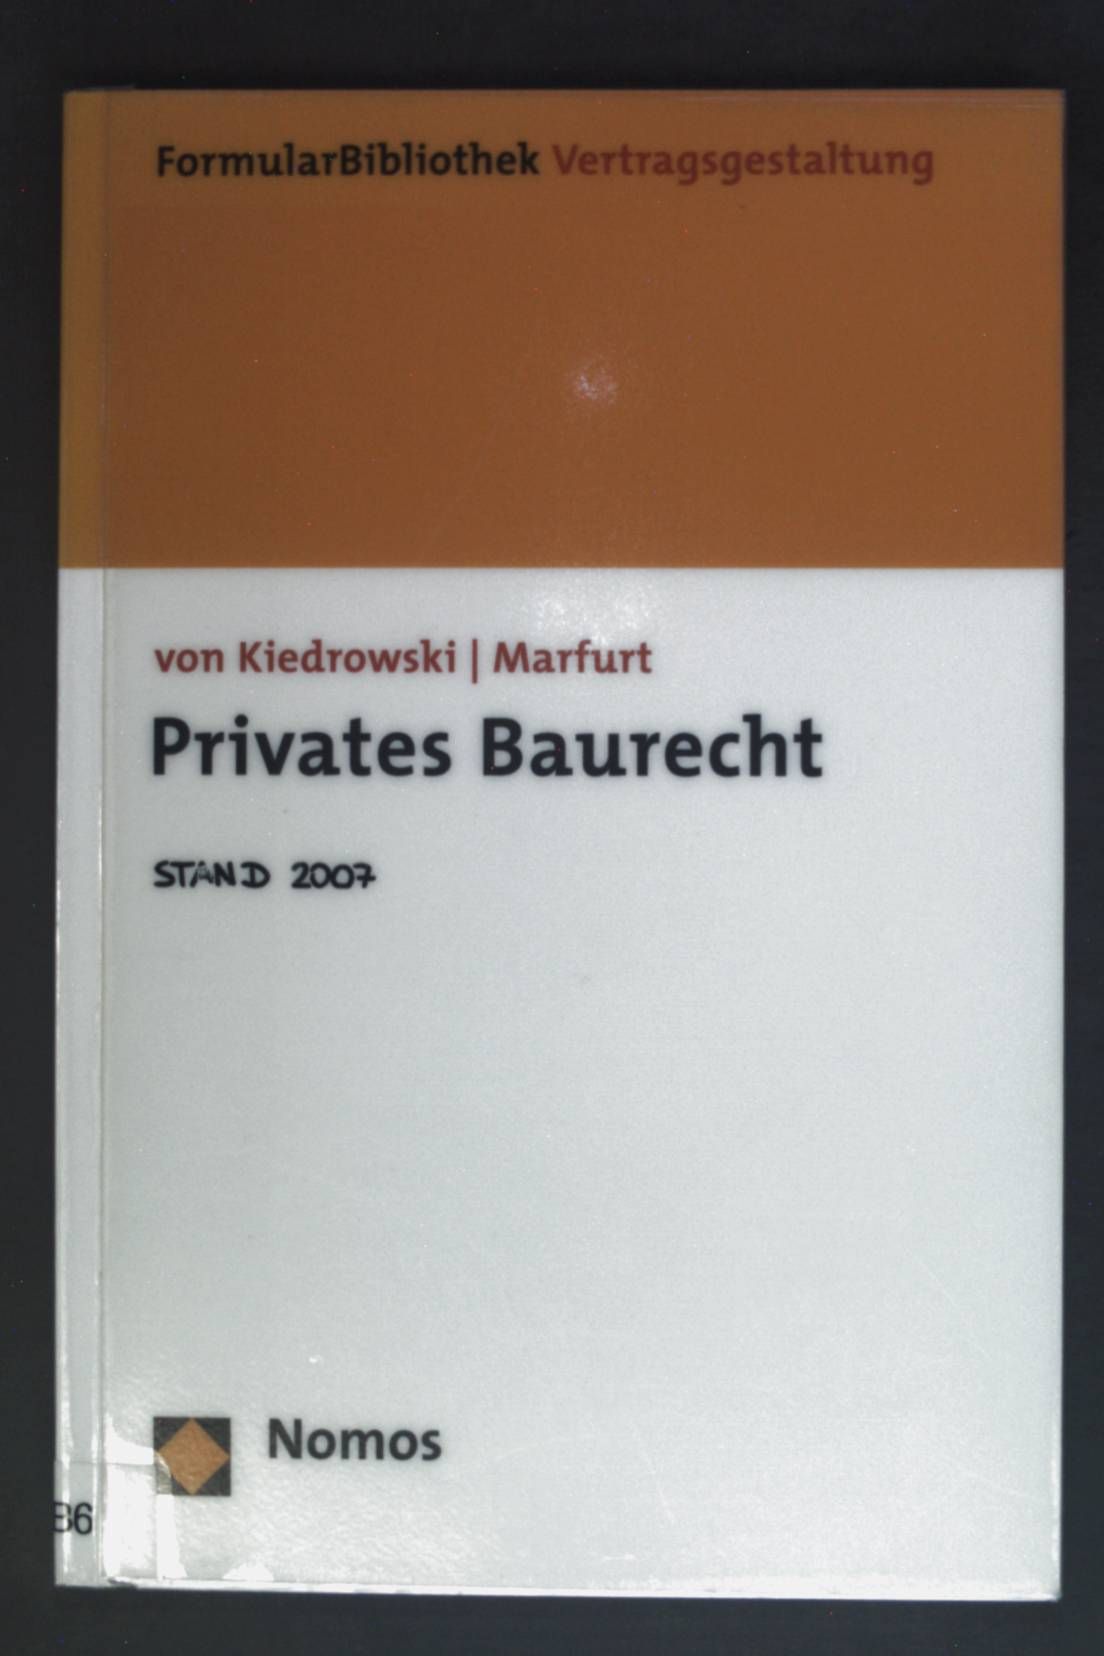 FormularBibliothek Vertragsgestaltung; Teil: Privates Baurecht. - Kiedrowski, Bernhard von